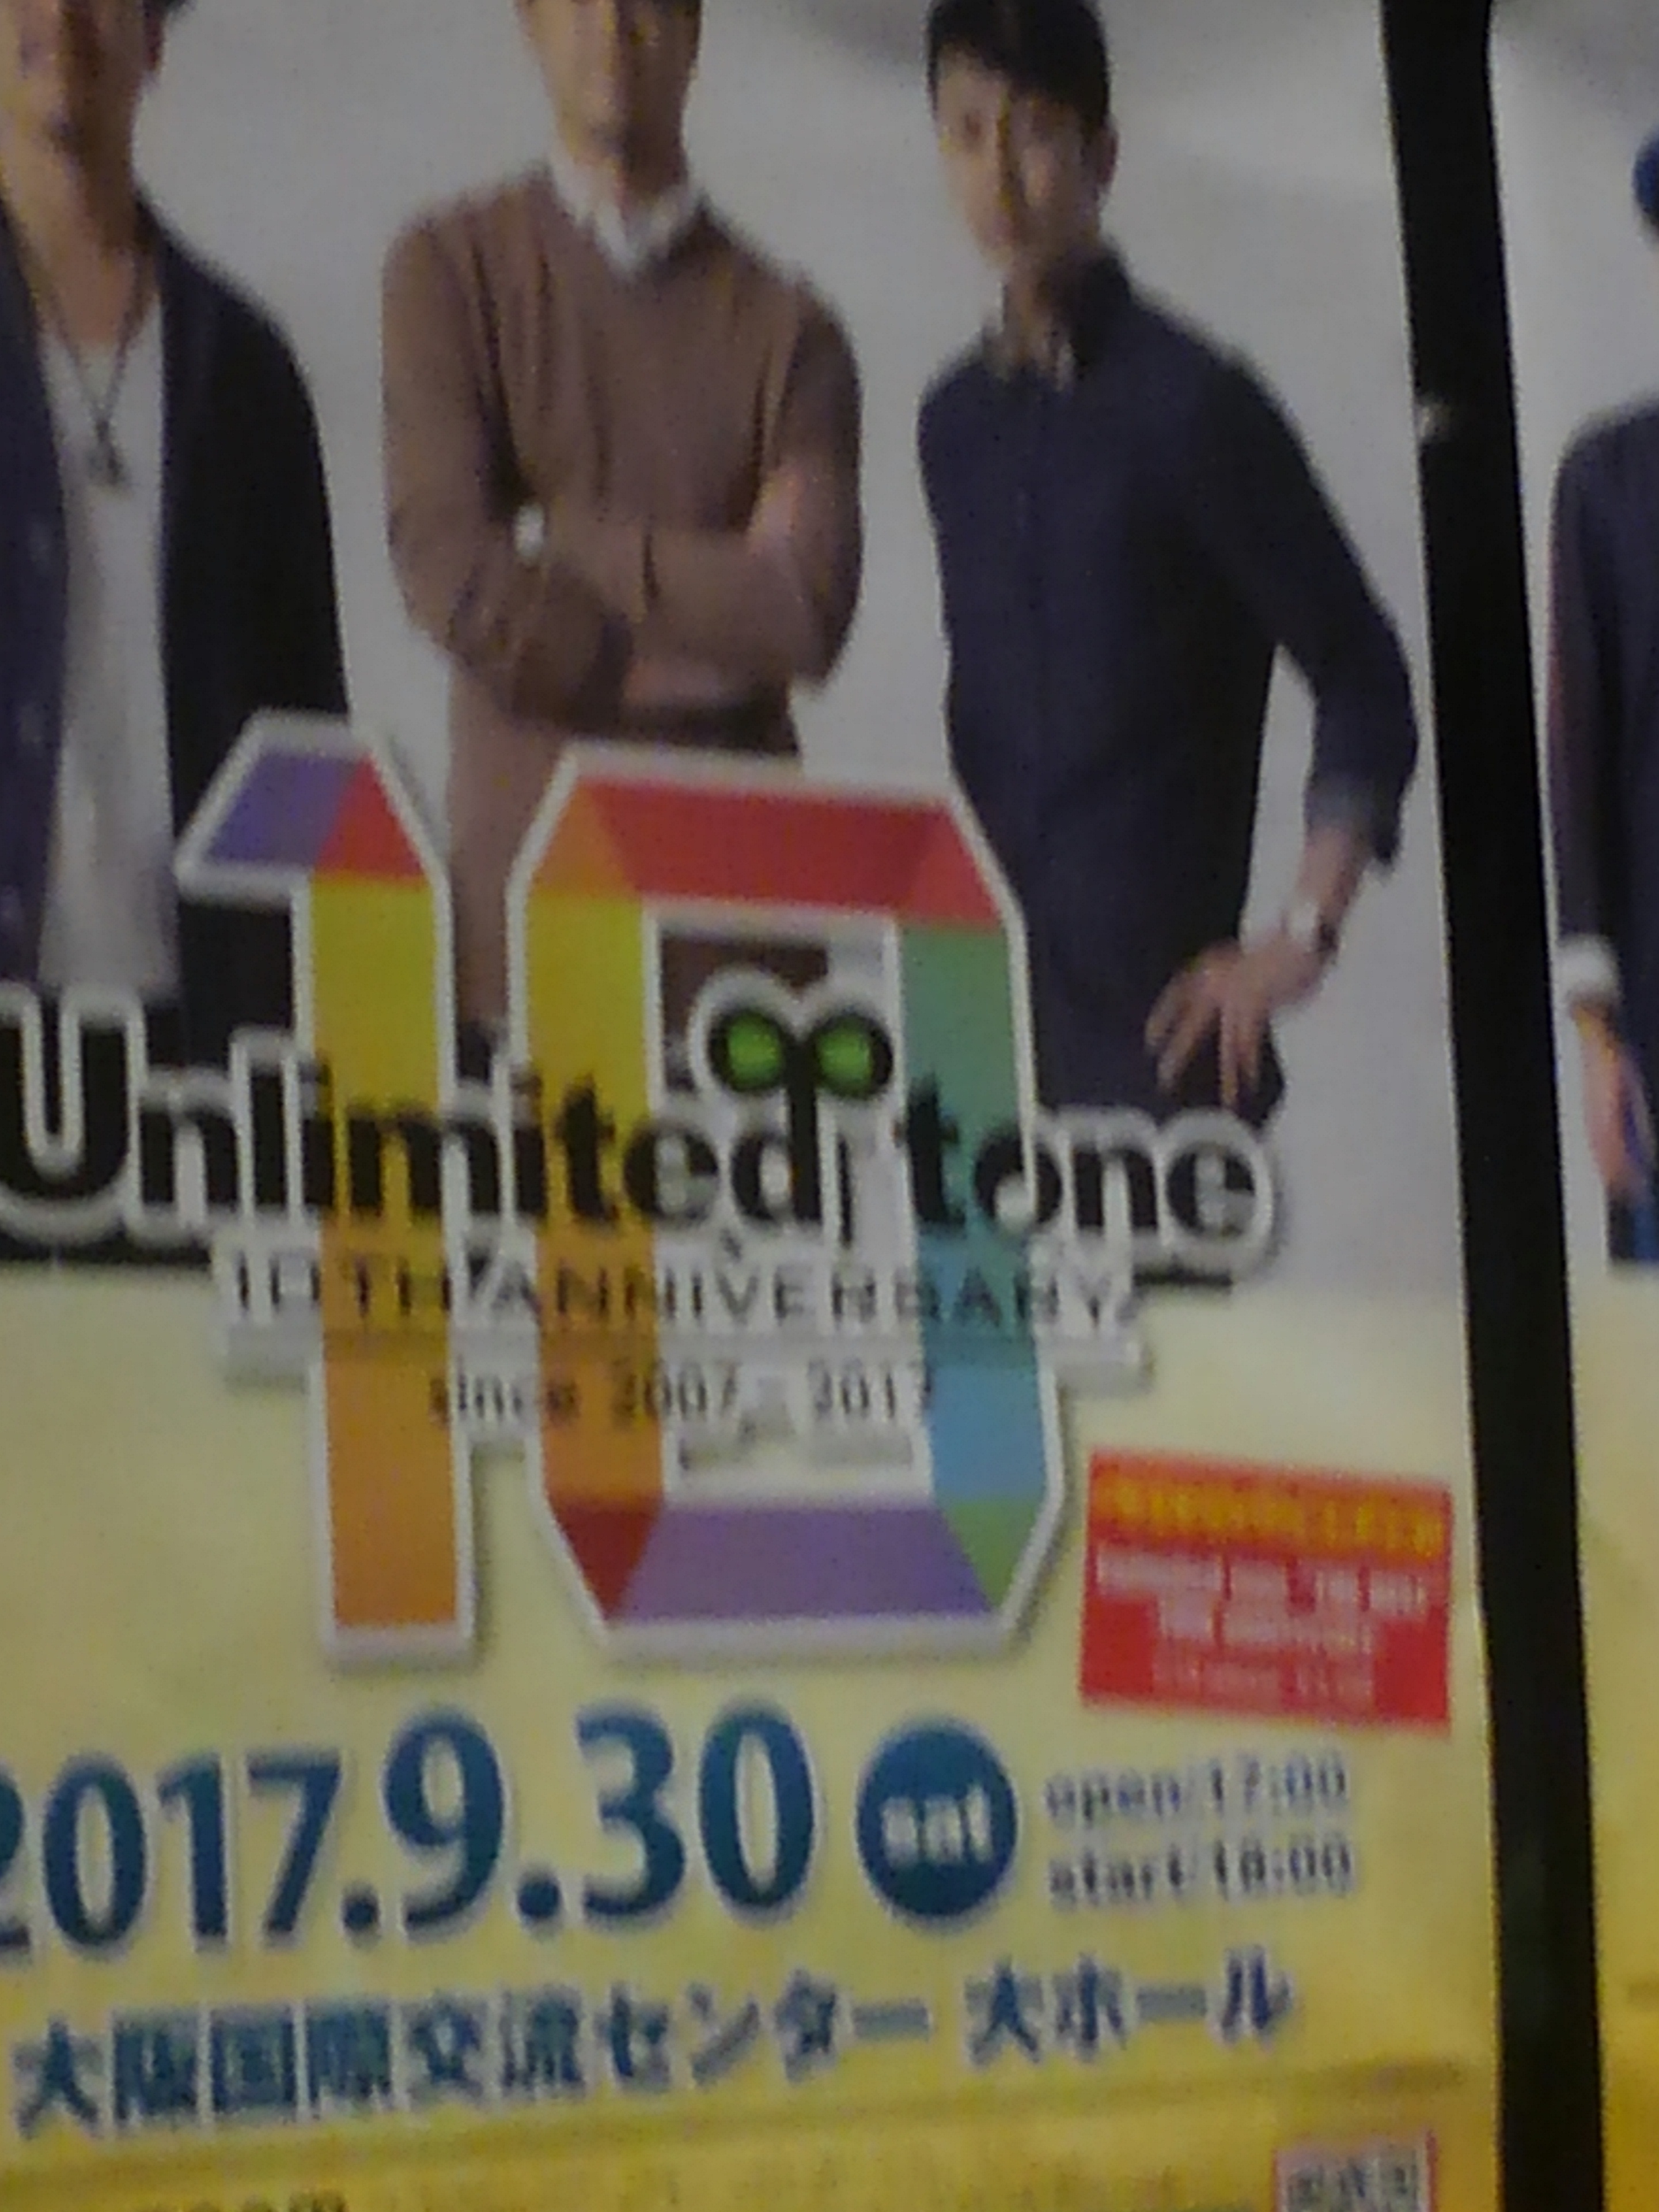 〜 出会ってくれてありがTONE!! 〜Unlimited tone 10th anniversary（Final）